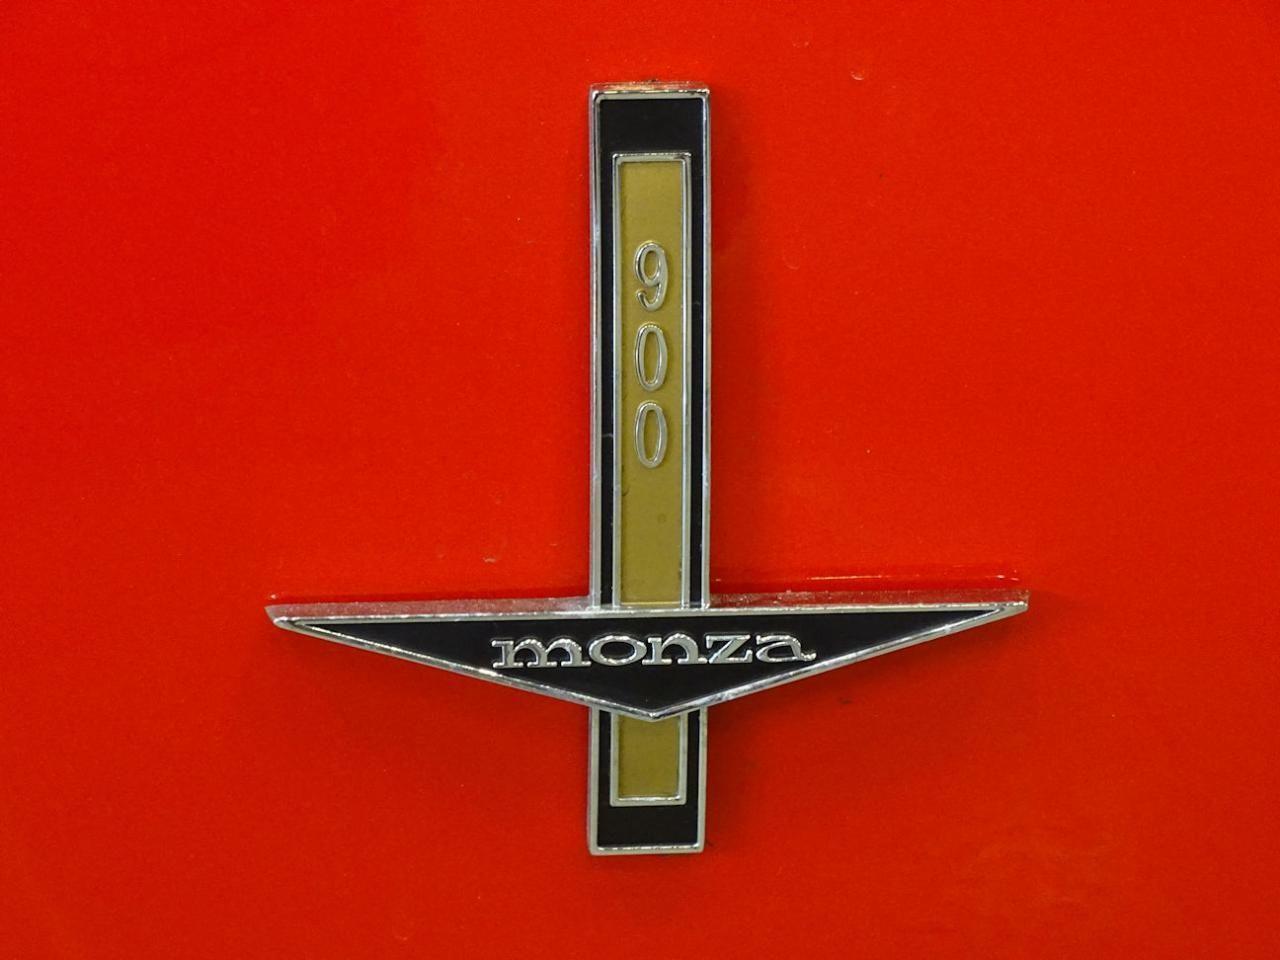 Corvair Logo - Chevrolet Corvair. ClassicCars.com